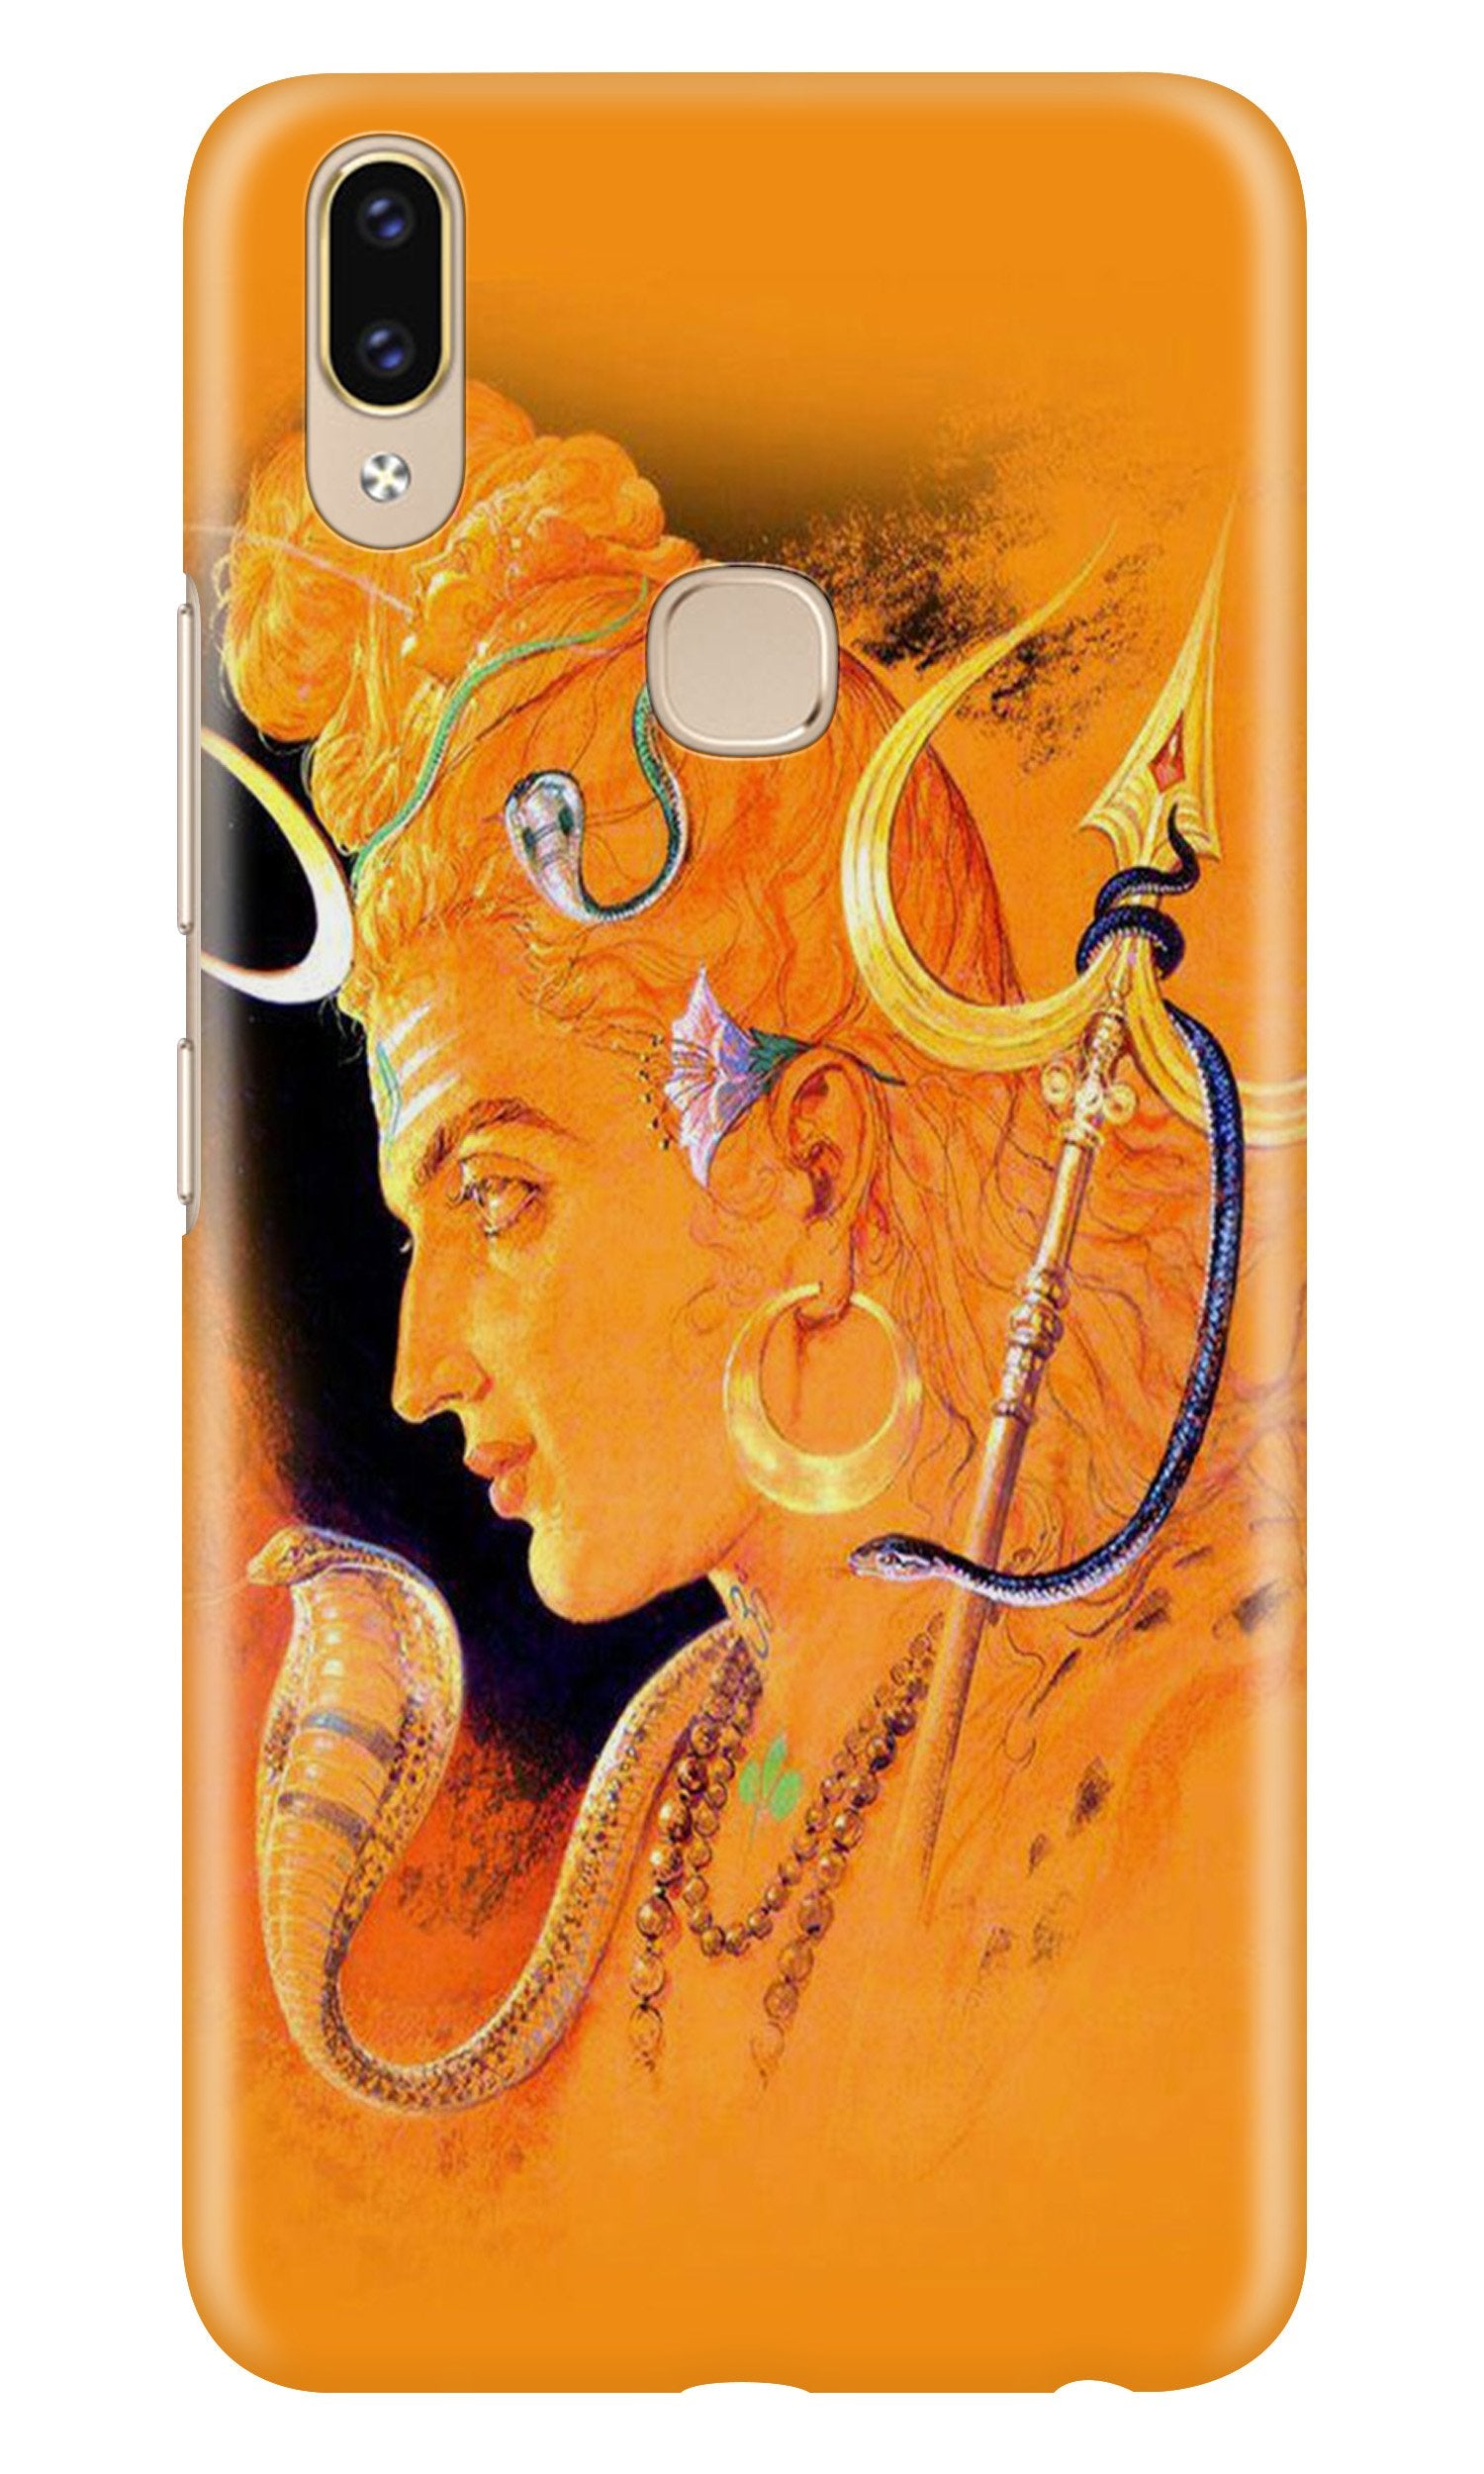 Lord Shiva Case for Zenfone 5z (Design No. 293)